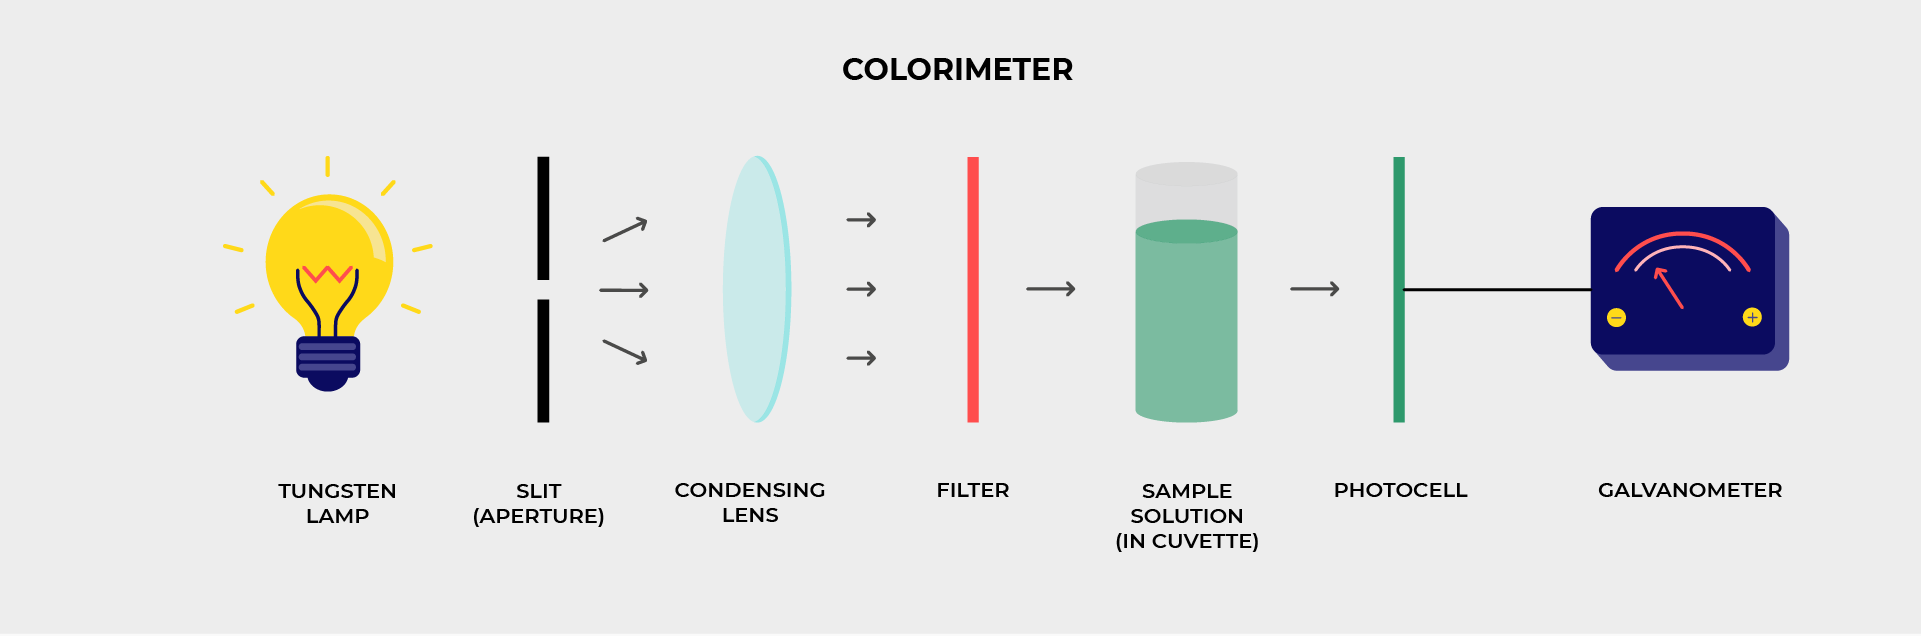 Colorimeter